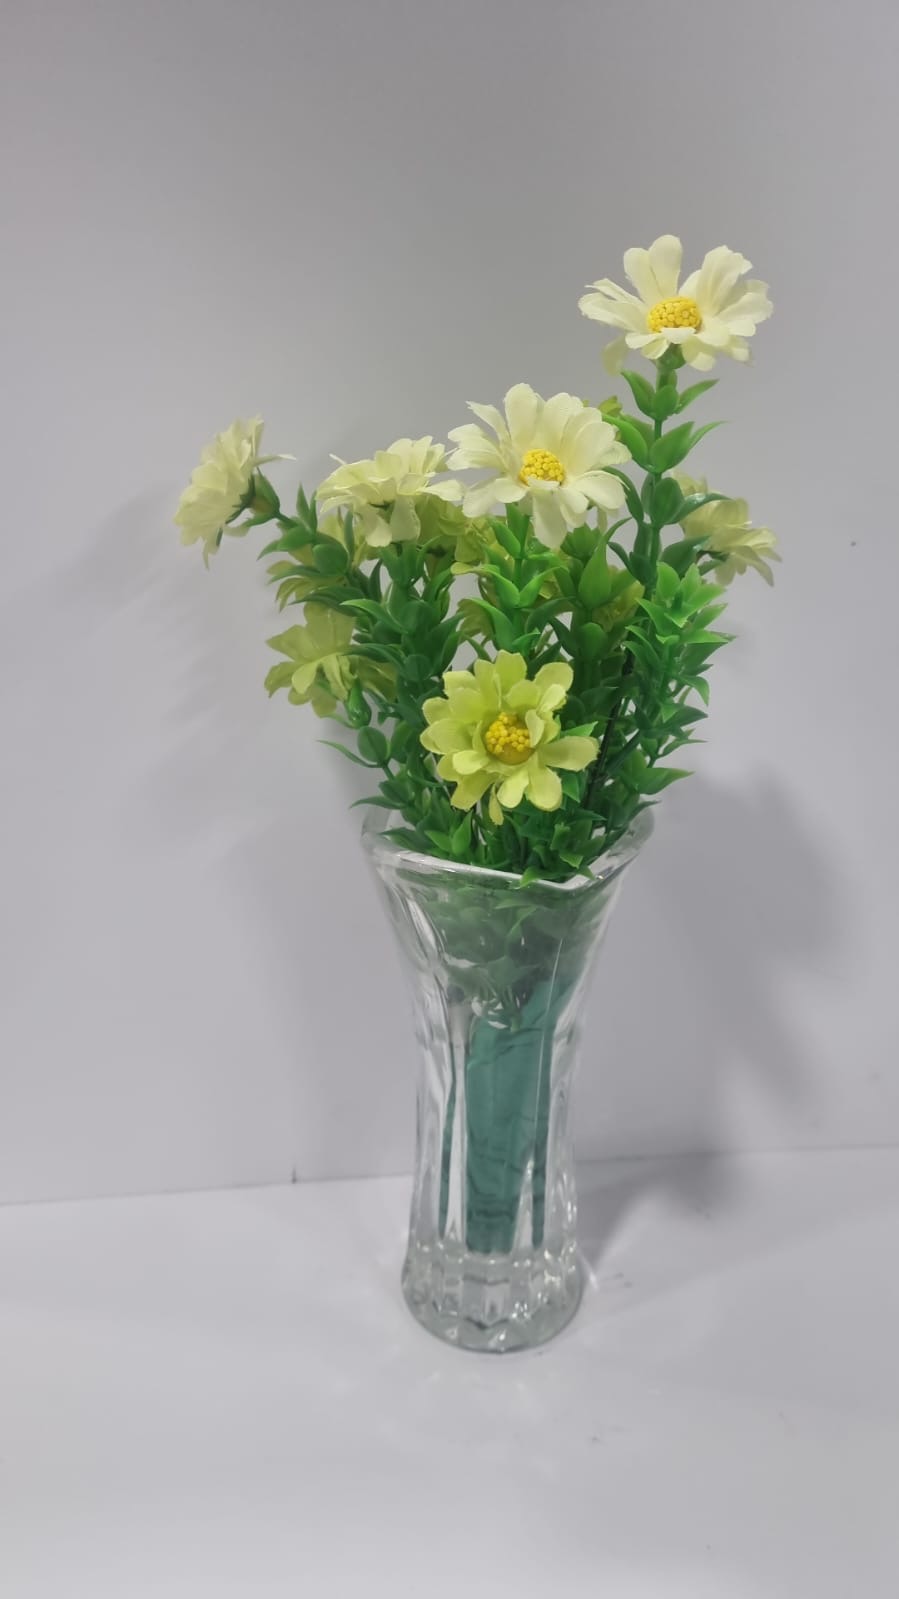 Daffodil Lg Yellow